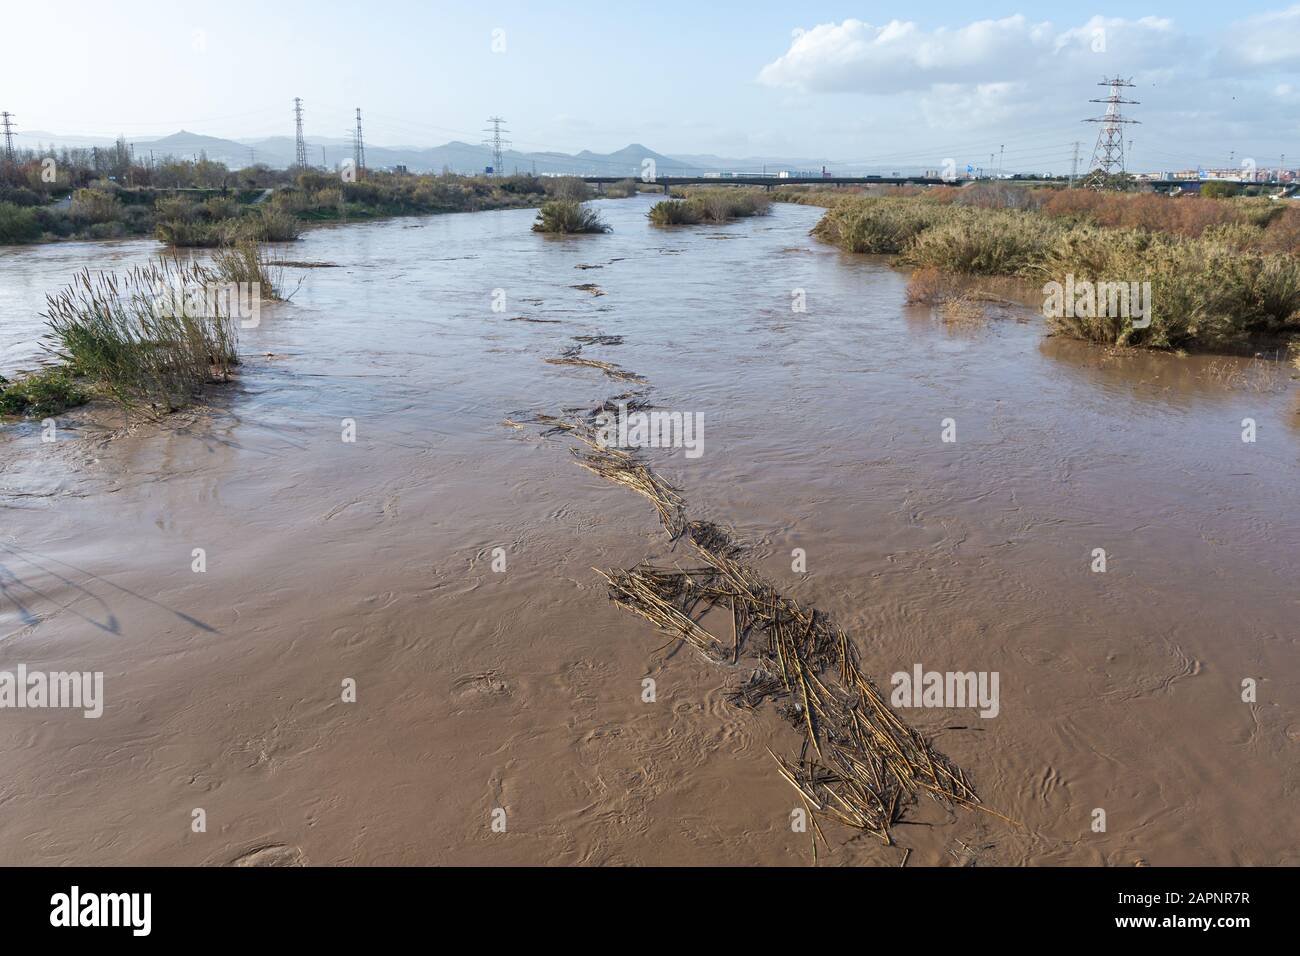 Río inundado, inundaciones en la ciudad, cambio climático, desastres naturales Foto de stock